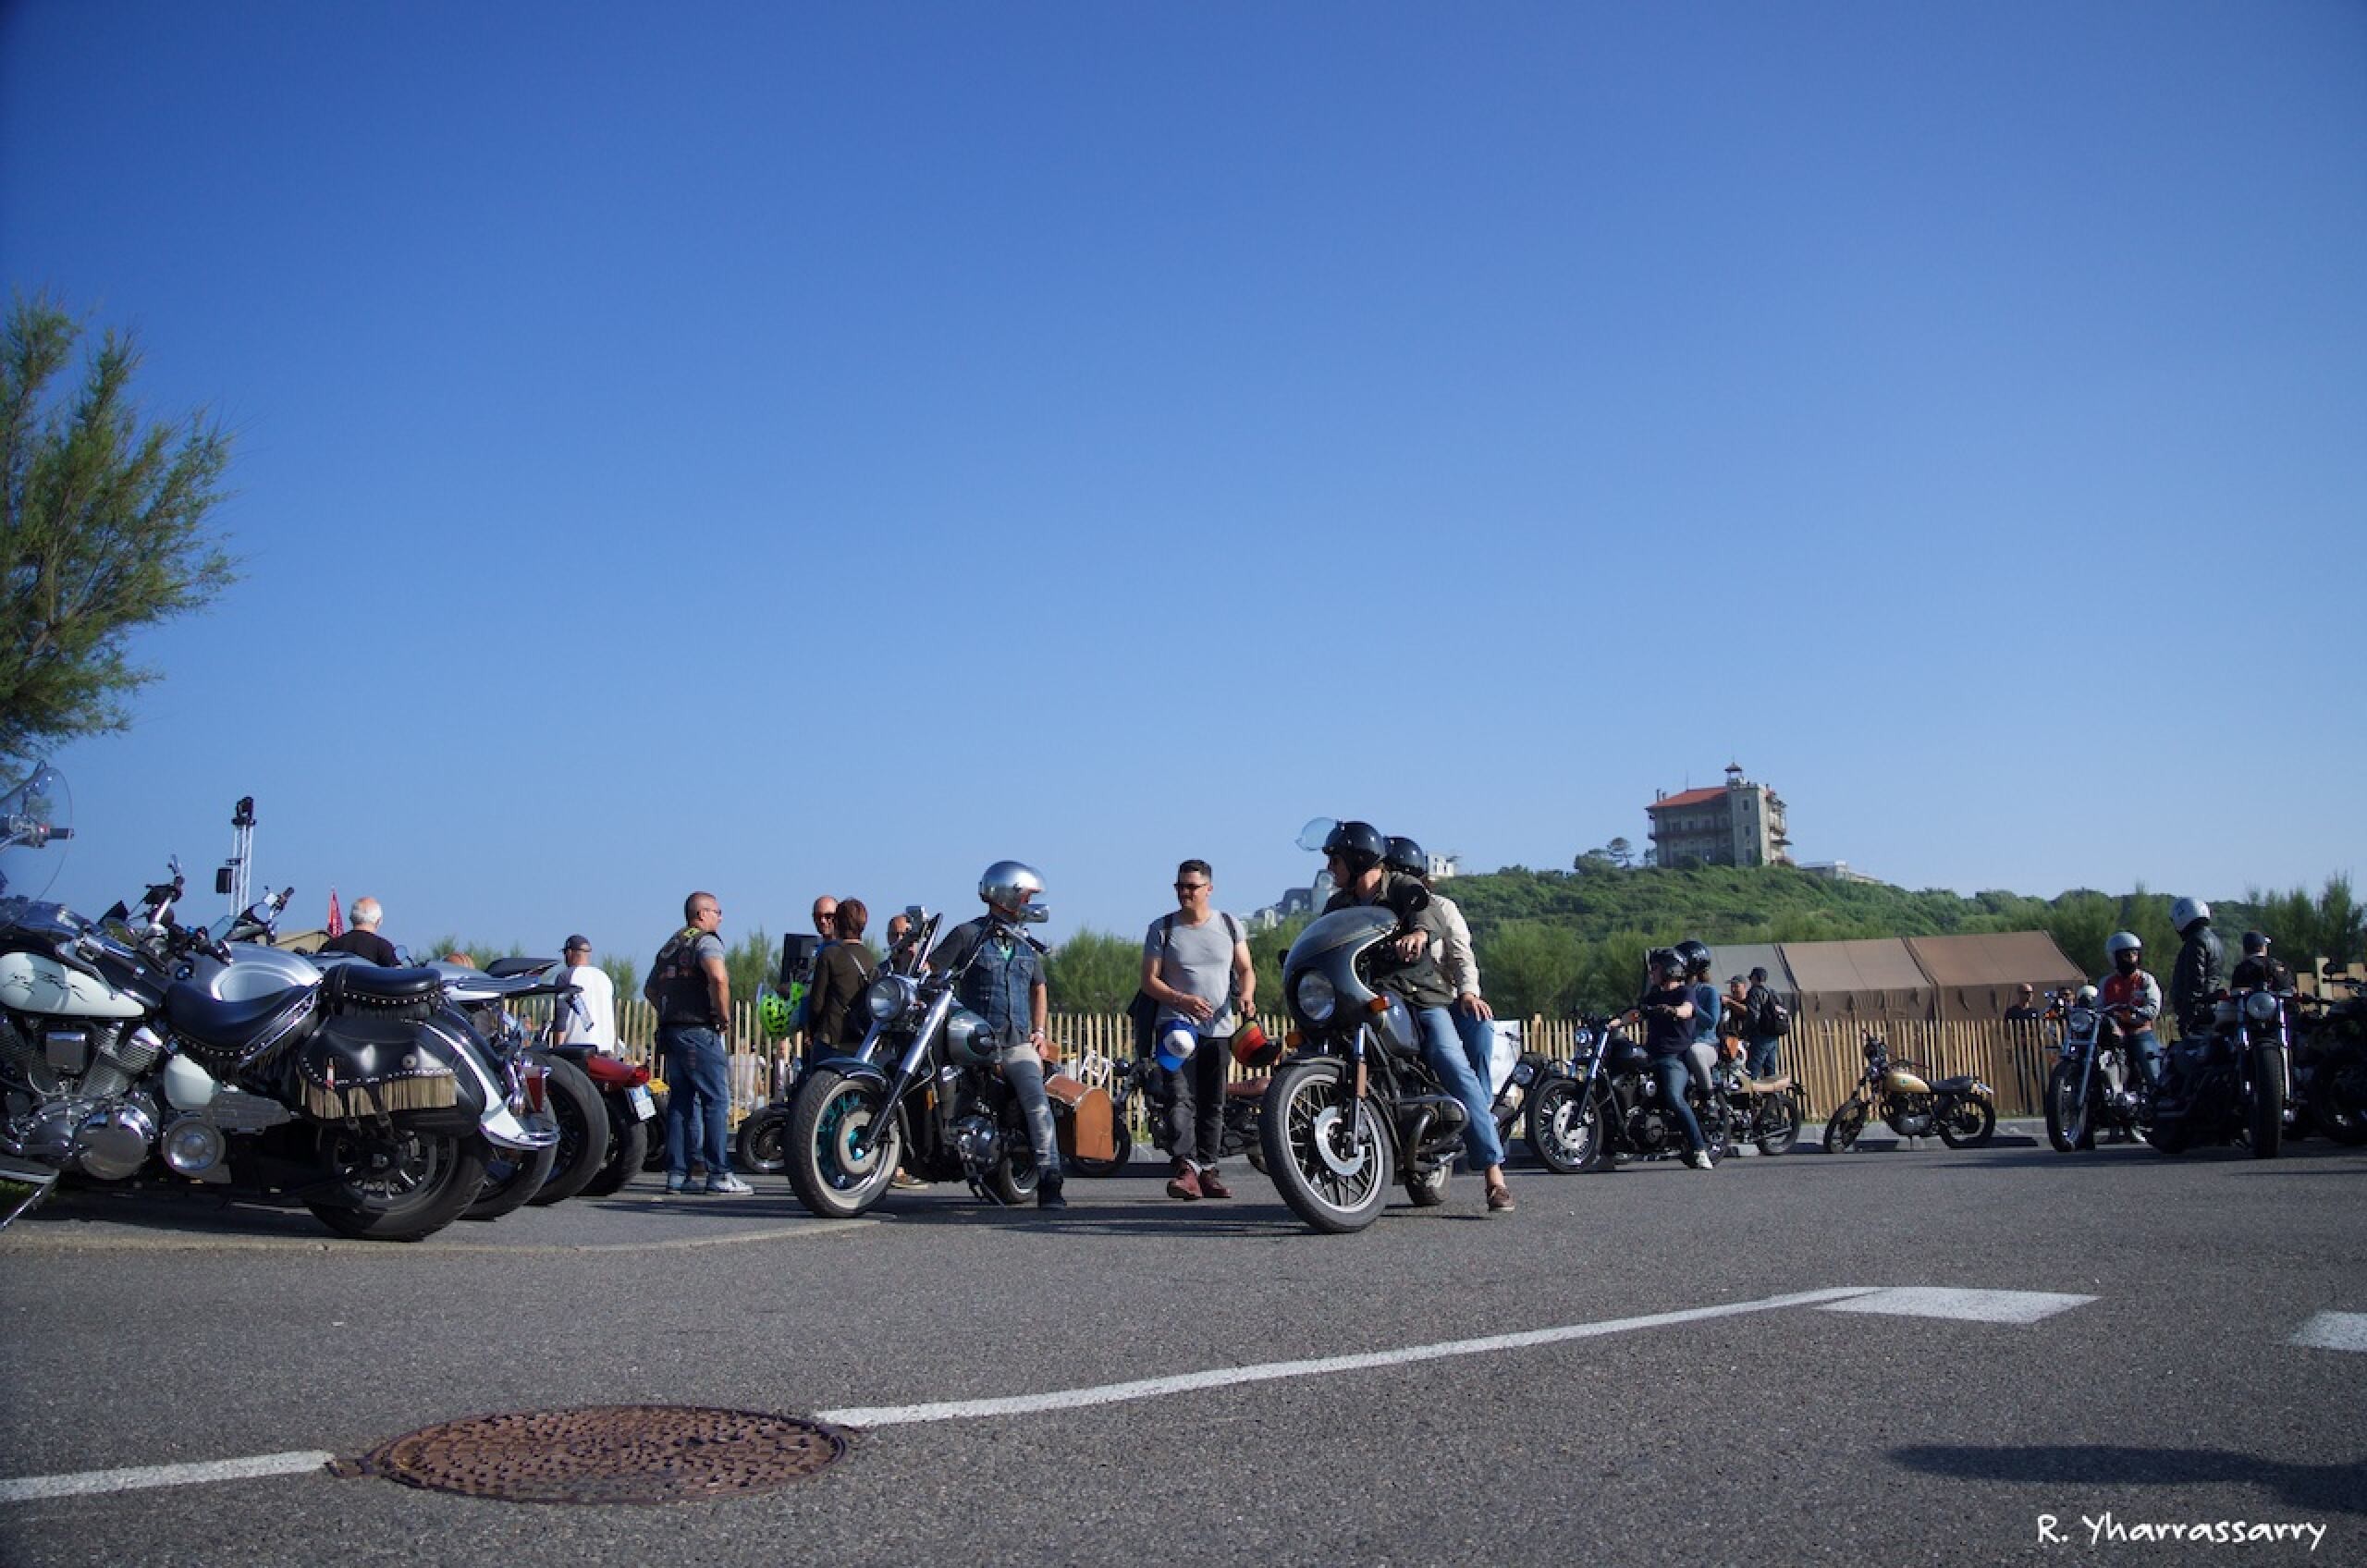 Groupe de motards sur des motos anciennes lors d'un regroupement.